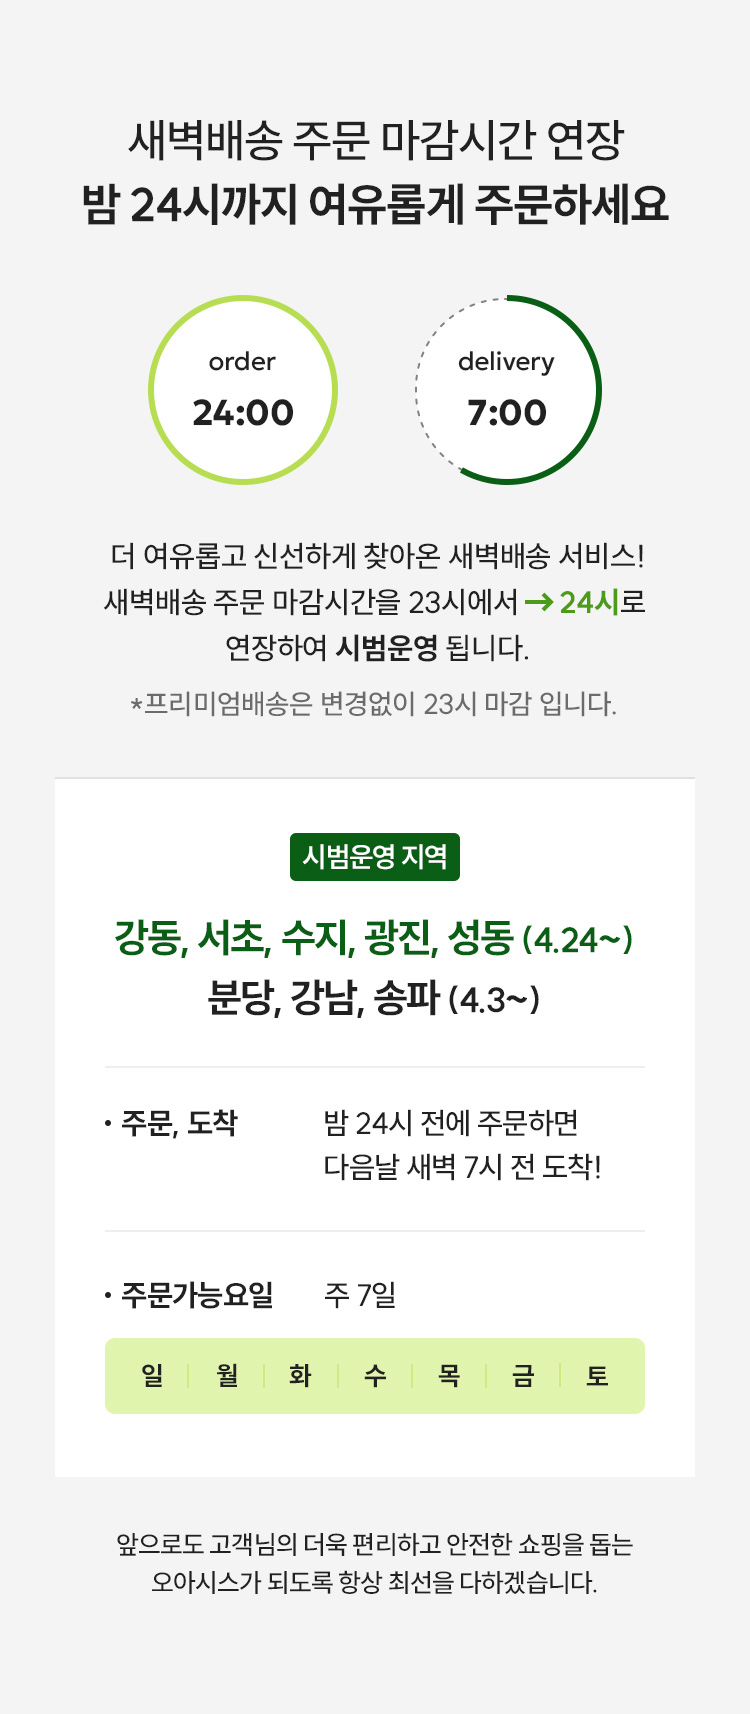 분당, 강남, 송파 새벽배송 주문 마감시간 연장